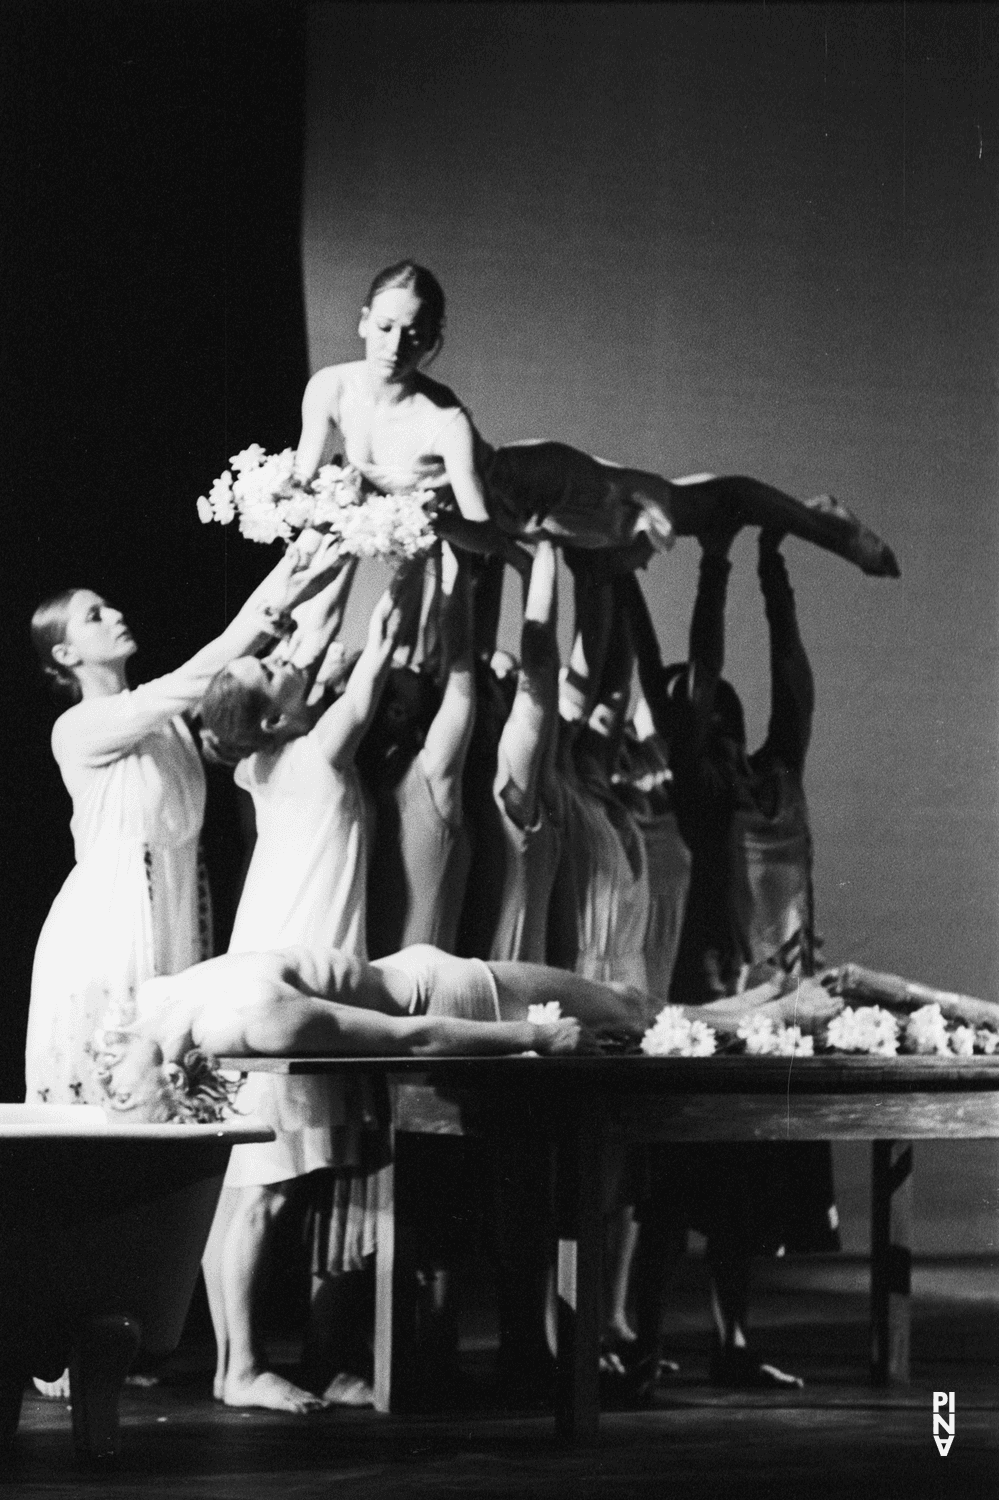 Dominique Mercy, Hiltrud Blanck and Vivienne Newport in “Iphigenie auf Tauris” by Pina Bausch at Opernhaus Wuppertal, season 1973/74